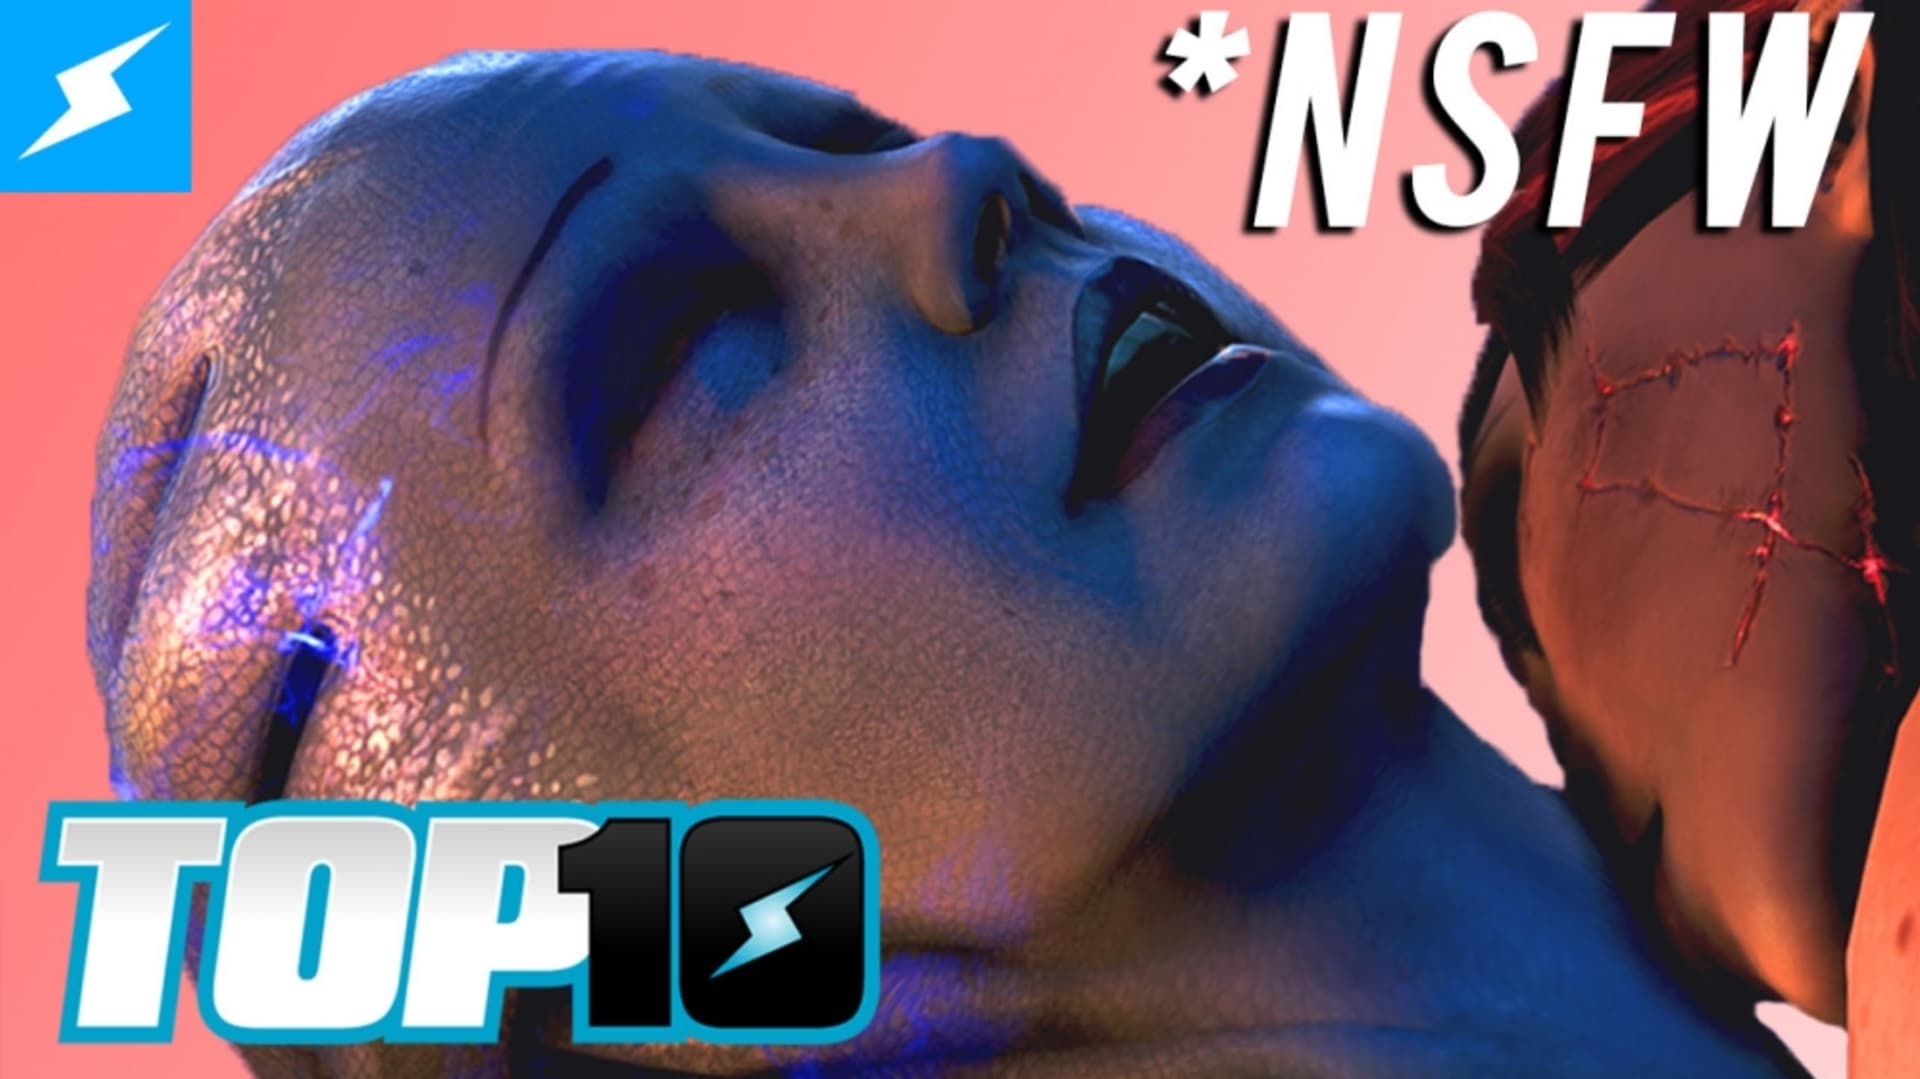 Top 10sex Videos - NSFW* Top 10 Sex Scenes in Video Games - Rooster Teeth